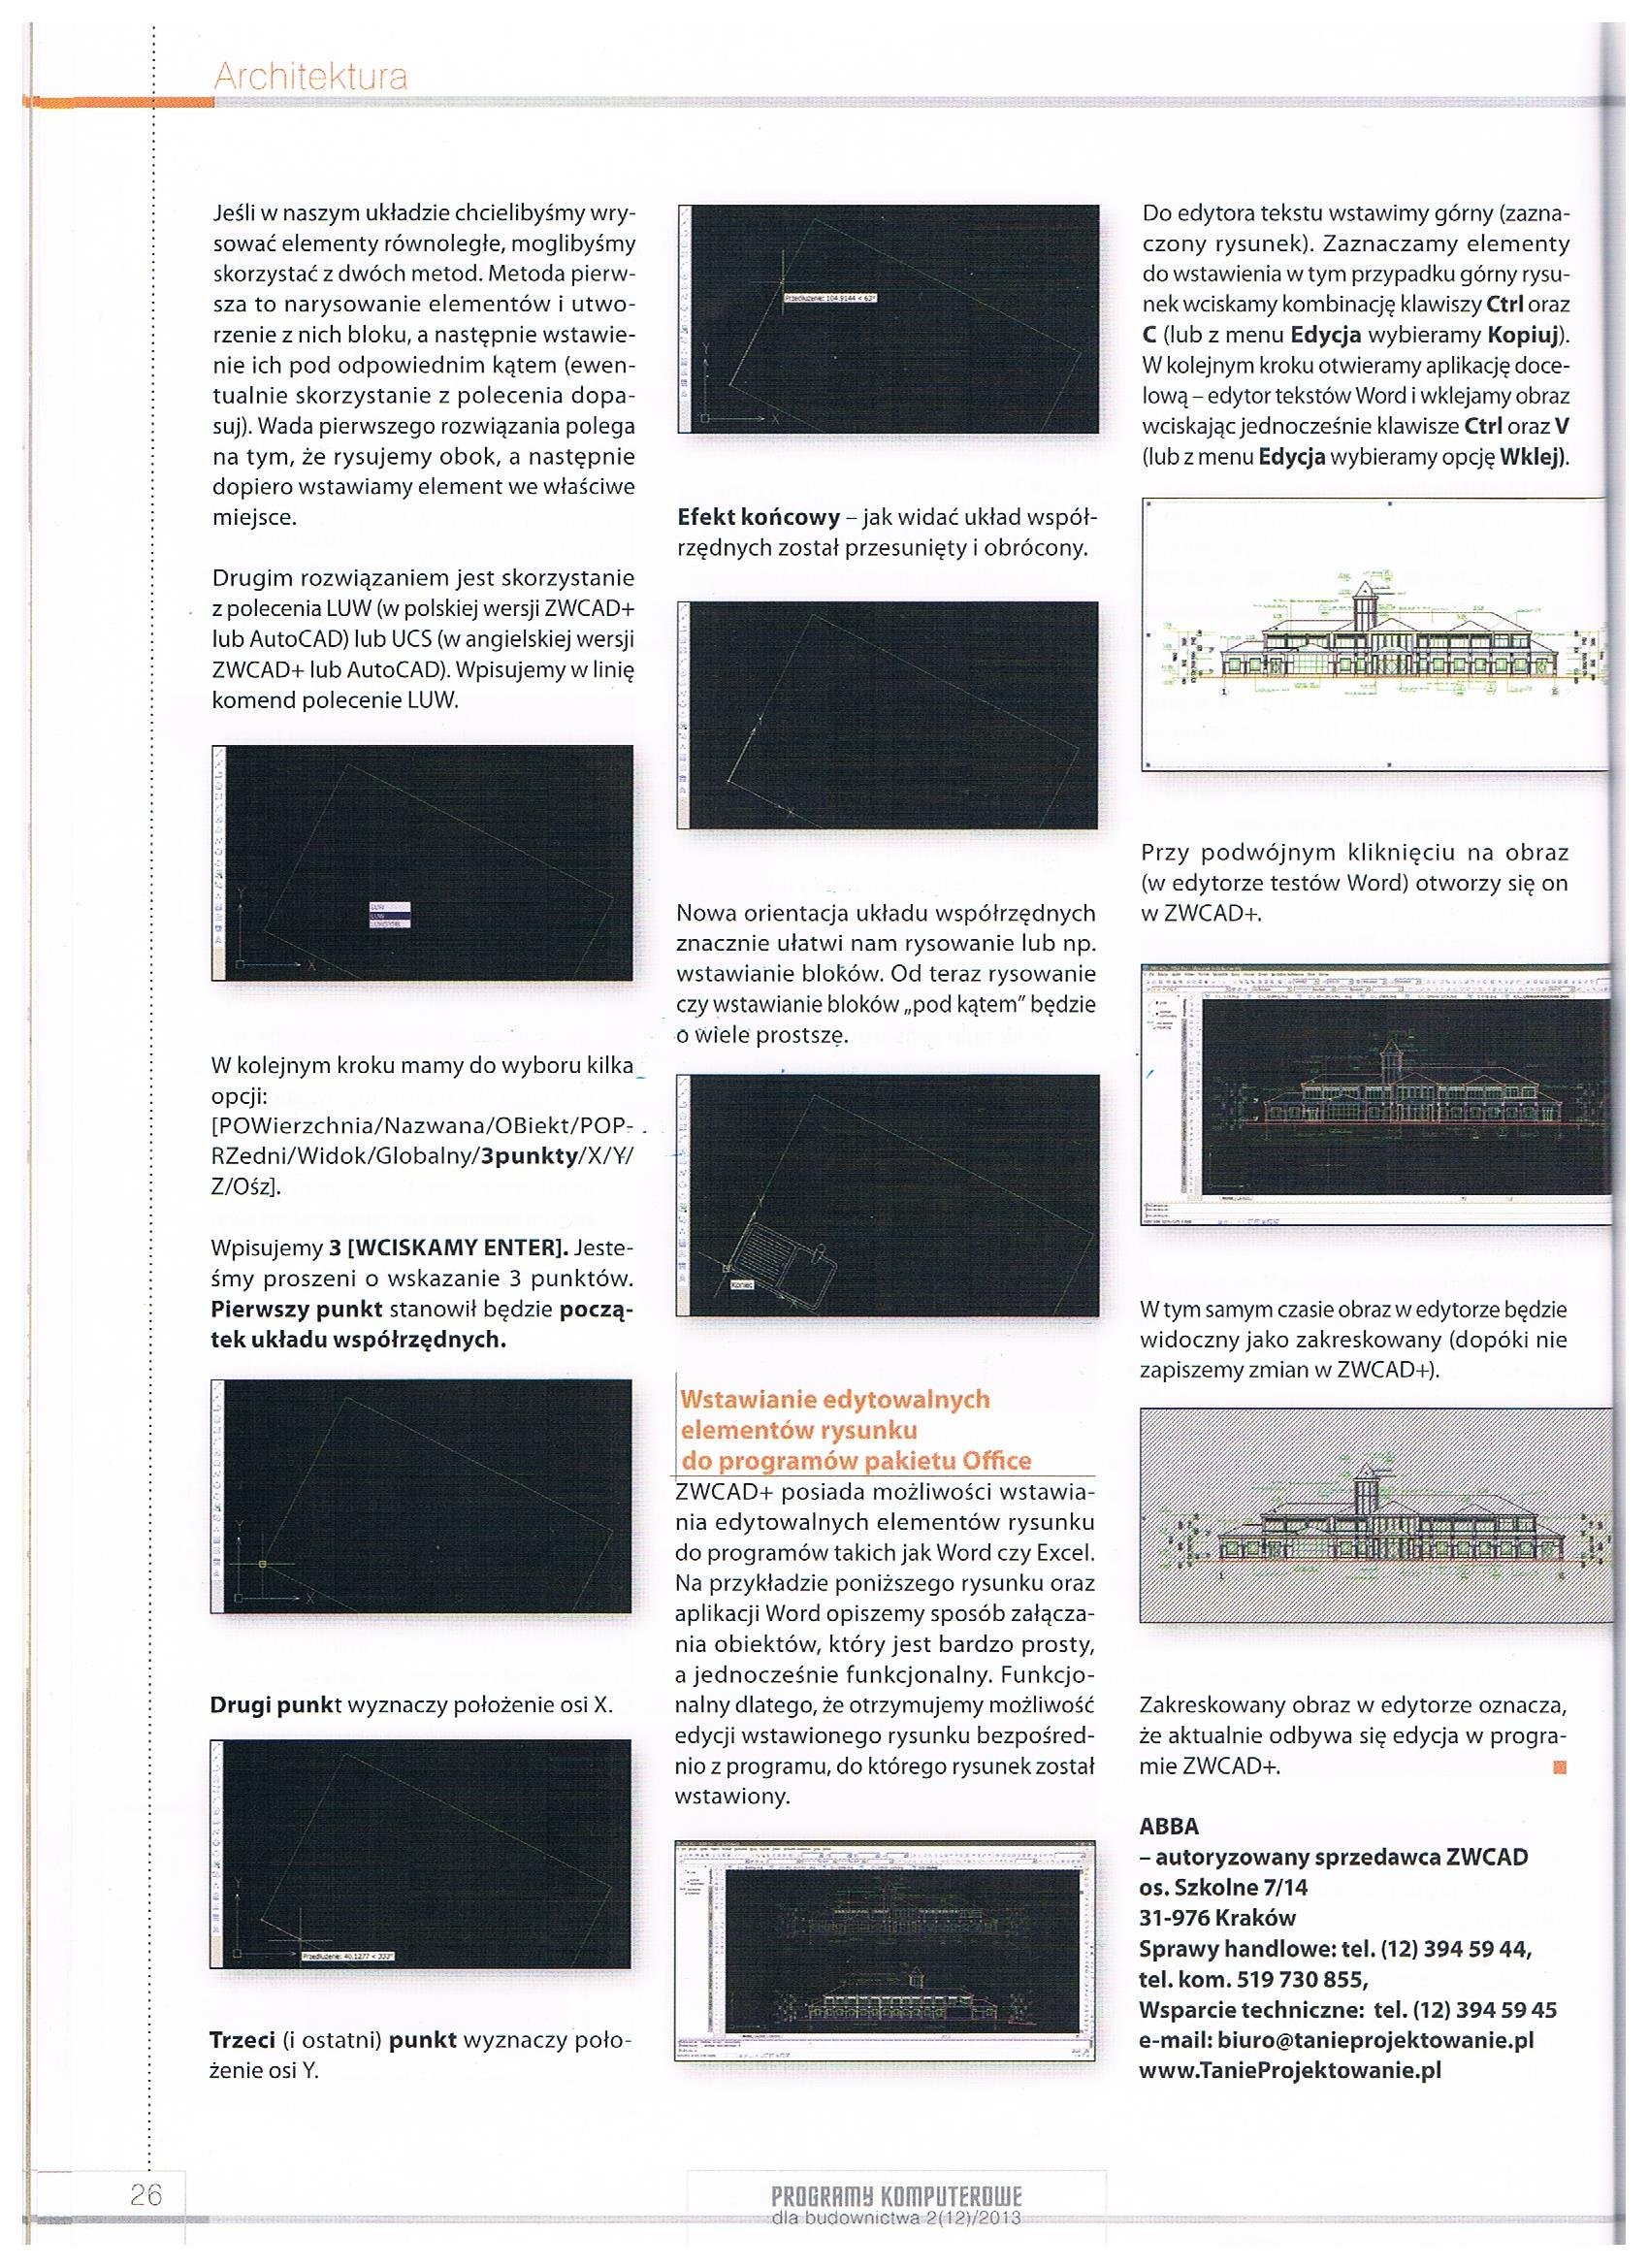 Programy komputerowe dla budownictwa 2-12-2013 str. 26